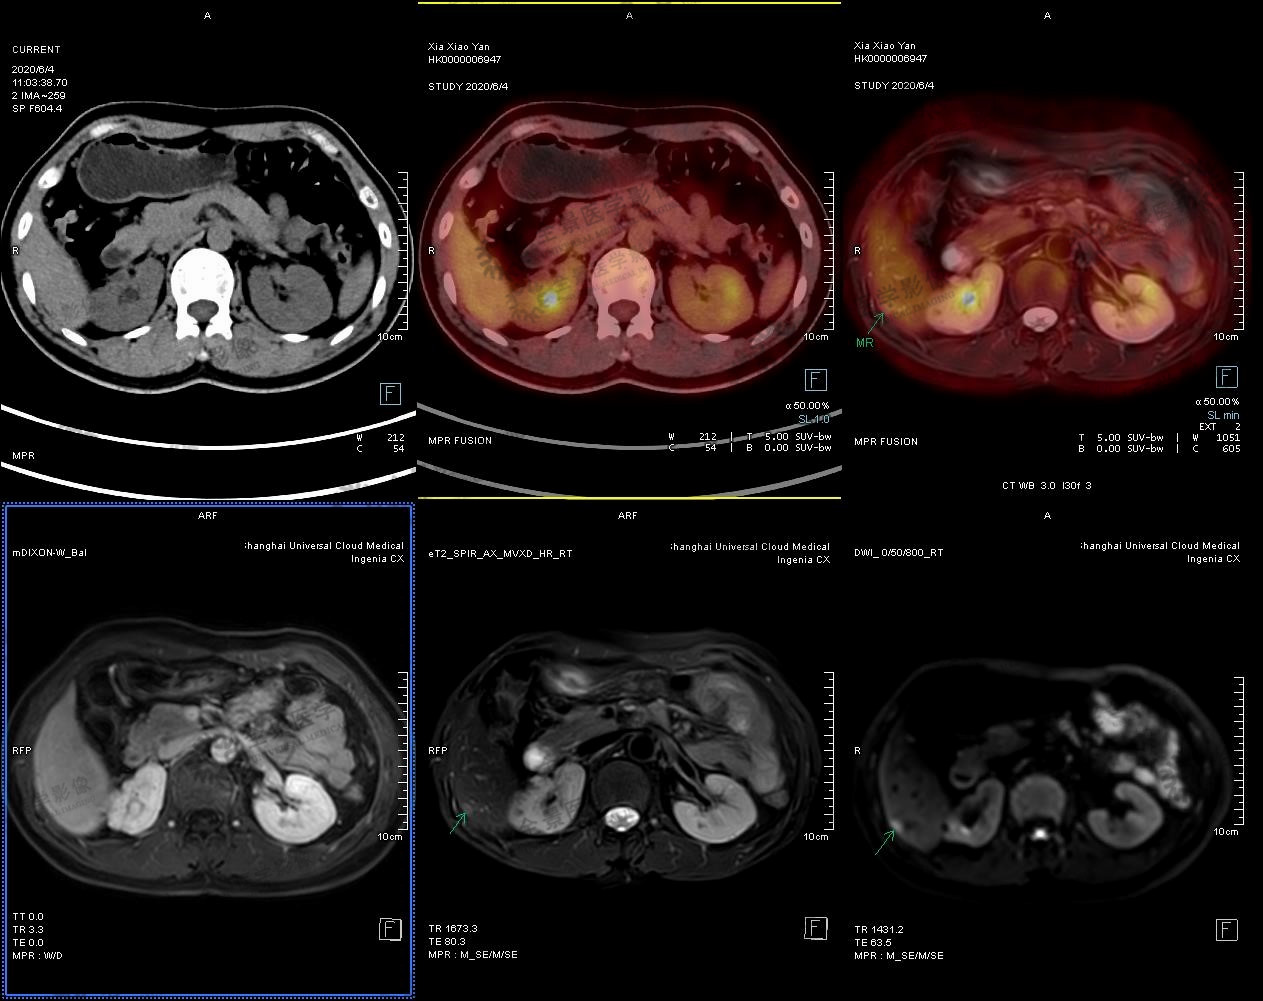 AJG 特殊病例: 肝细胞癌和胆管细胞癌界限清晰的混合细胞型肝癌_患者